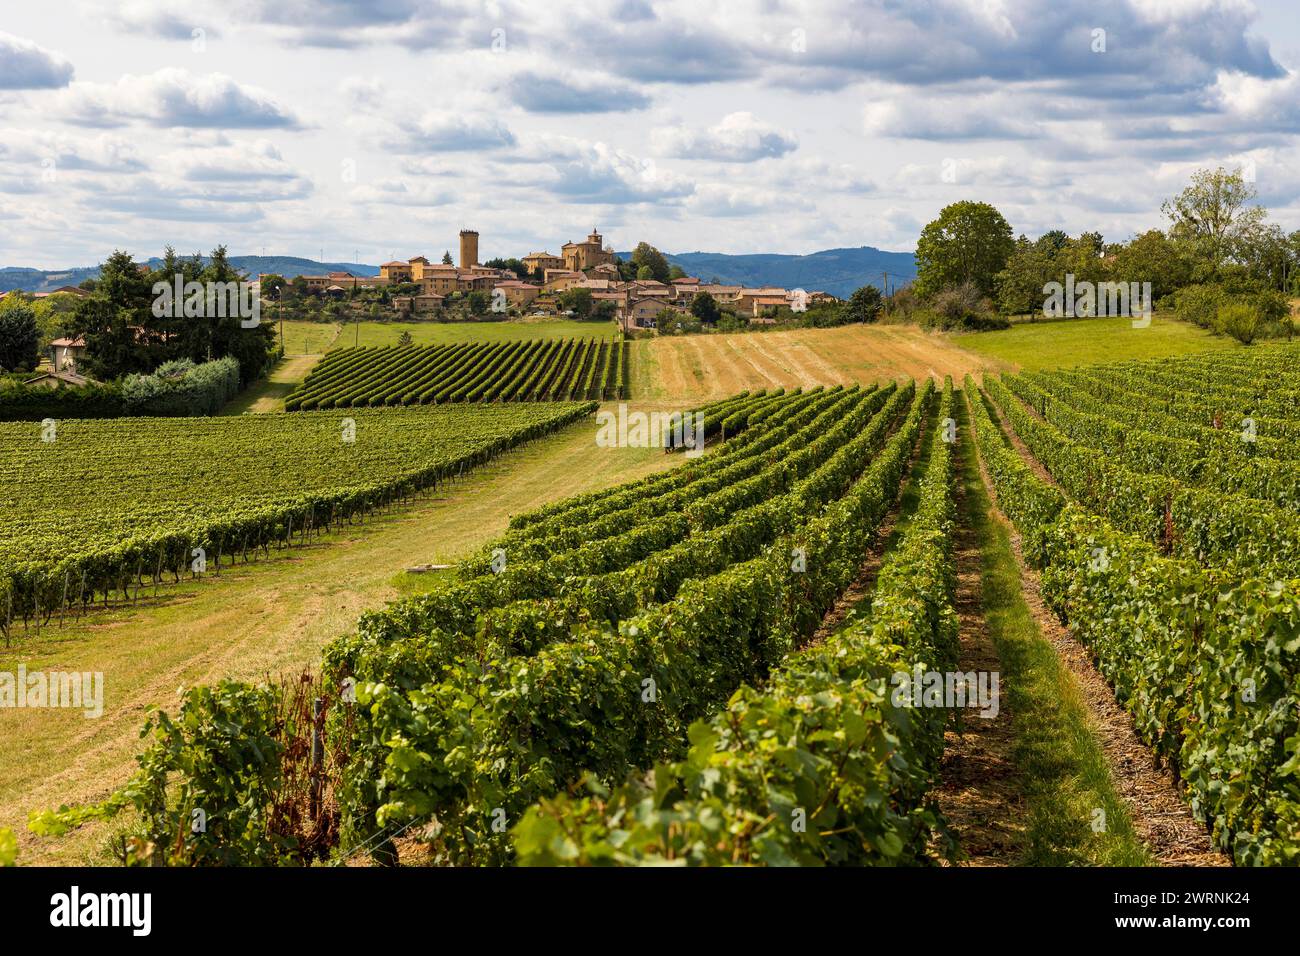 Village médiéval d’Oingt construit en pierres dorées typique de cette région du Beaujolais depuis les vignobles aux alentours Foto Stock